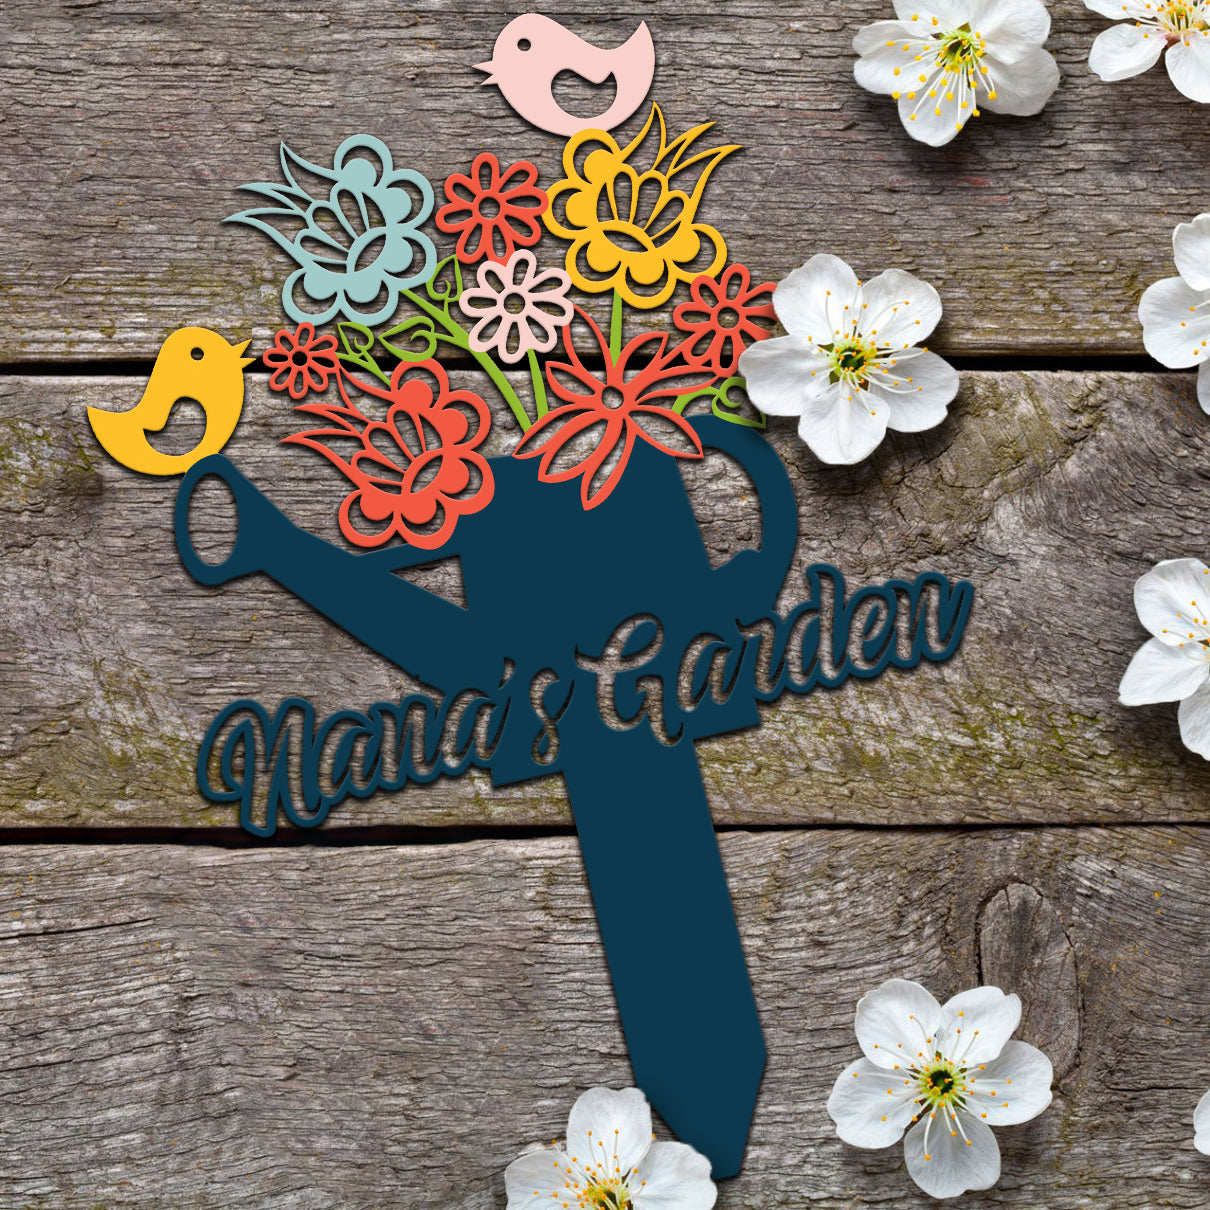 Family Color Metal Sign Garden Stake Nana's Garden Idea For Garden Decoration